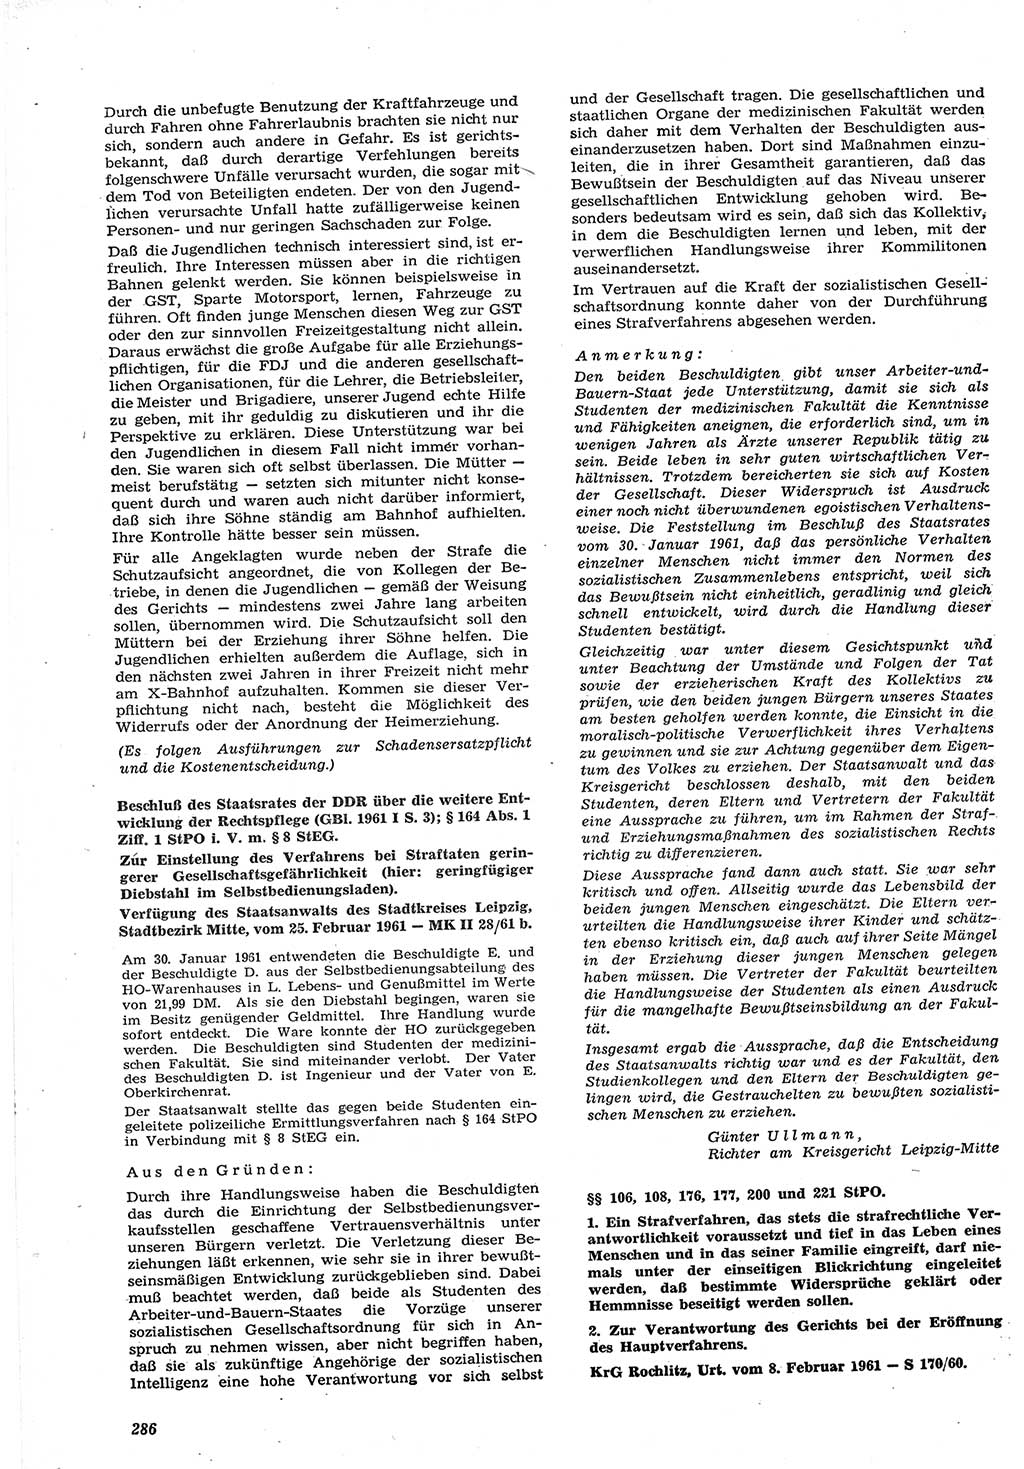 Neue Justiz (NJ), Zeitschrift für Recht und Rechtswissenschaft [Deutsche Demokratische Republik (DDR)], 15. Jahrgang 1961, Seite 286 (NJ DDR 1961, S. 286)